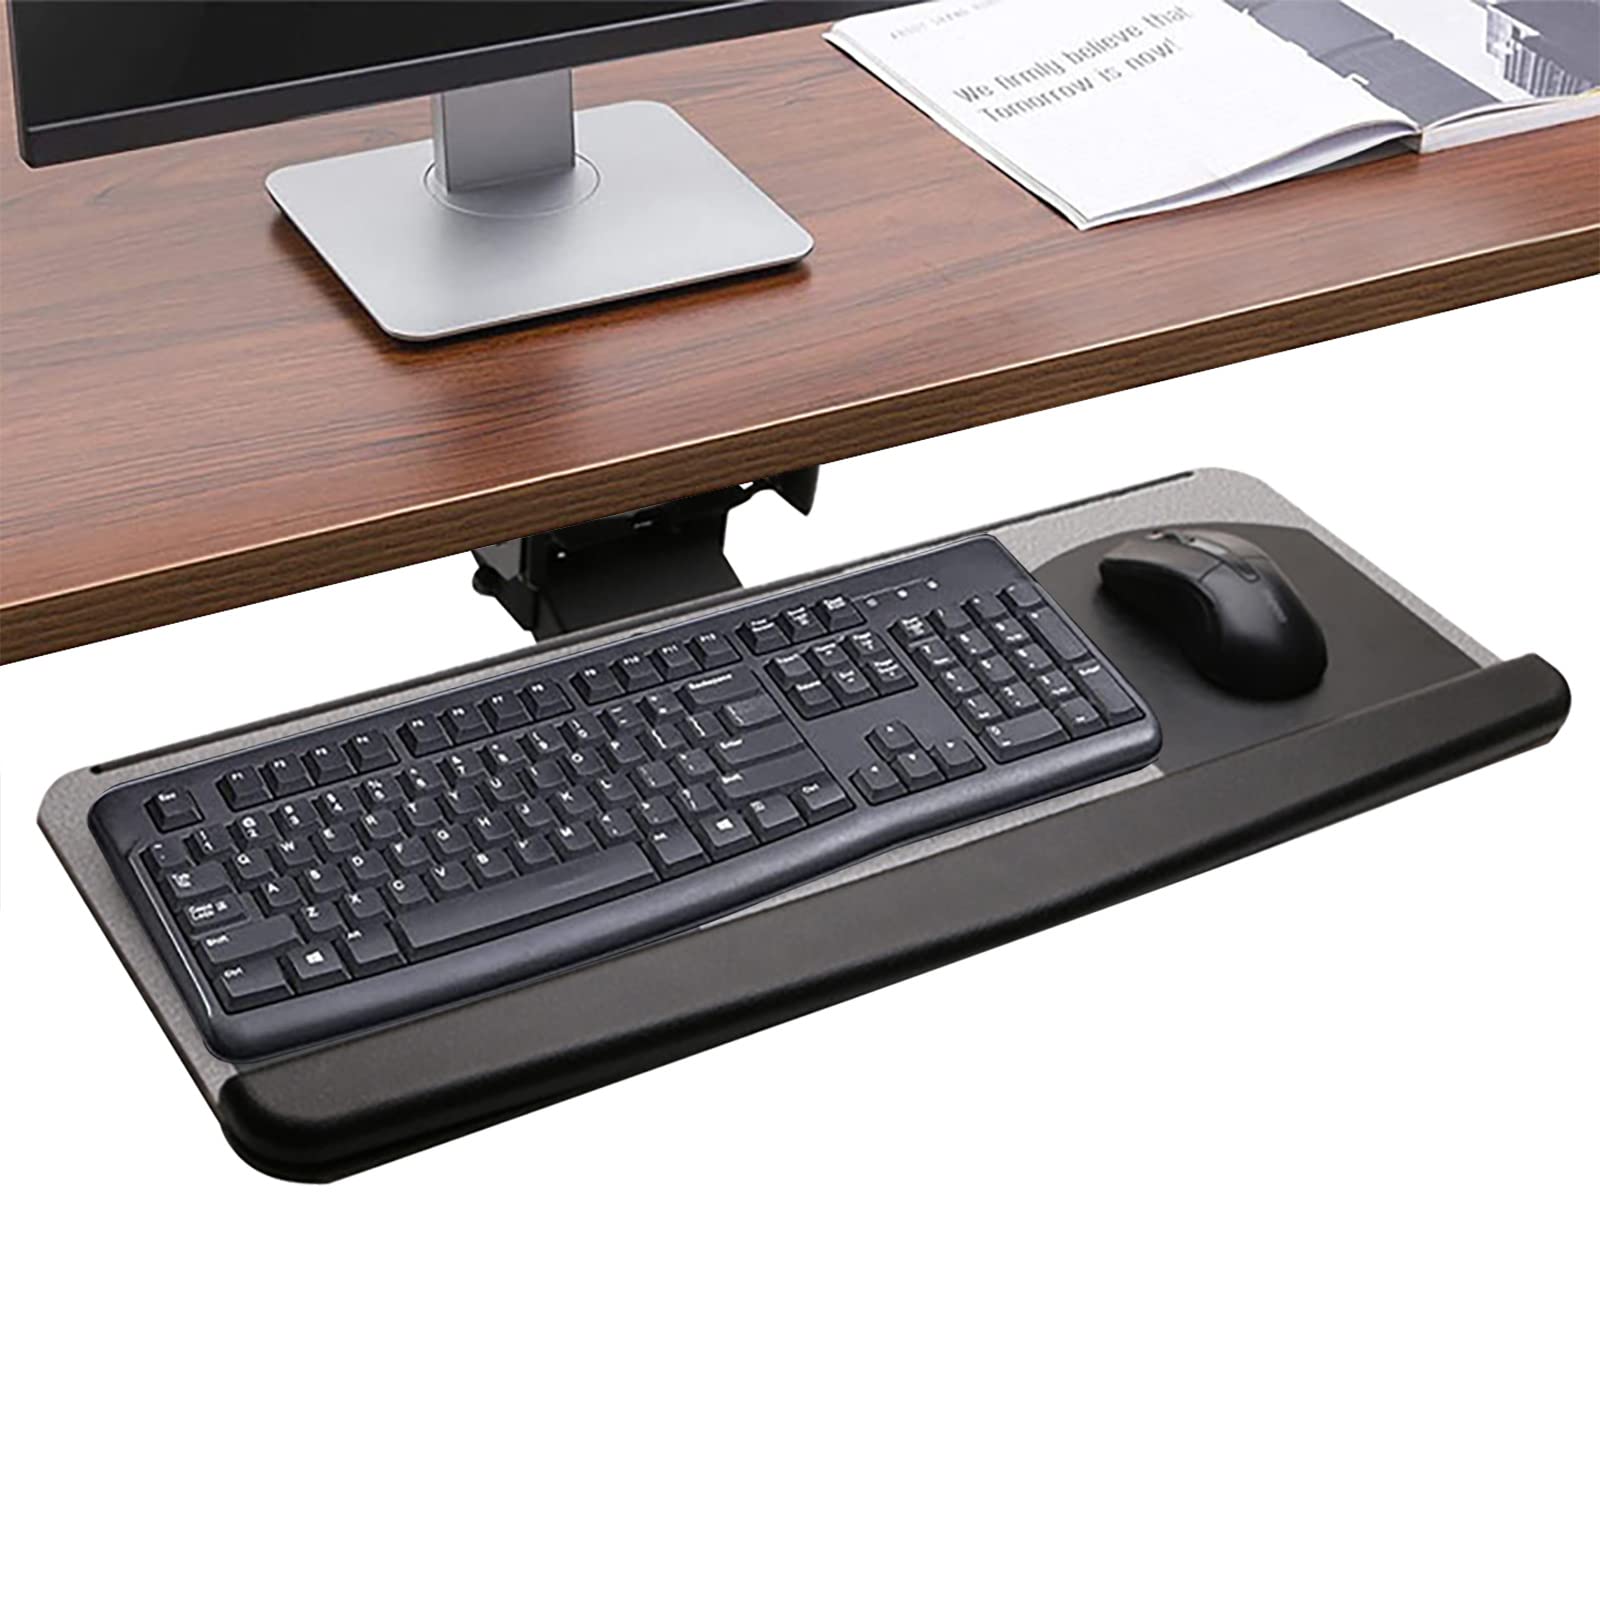 Support ergonomique pour ordinateur portable